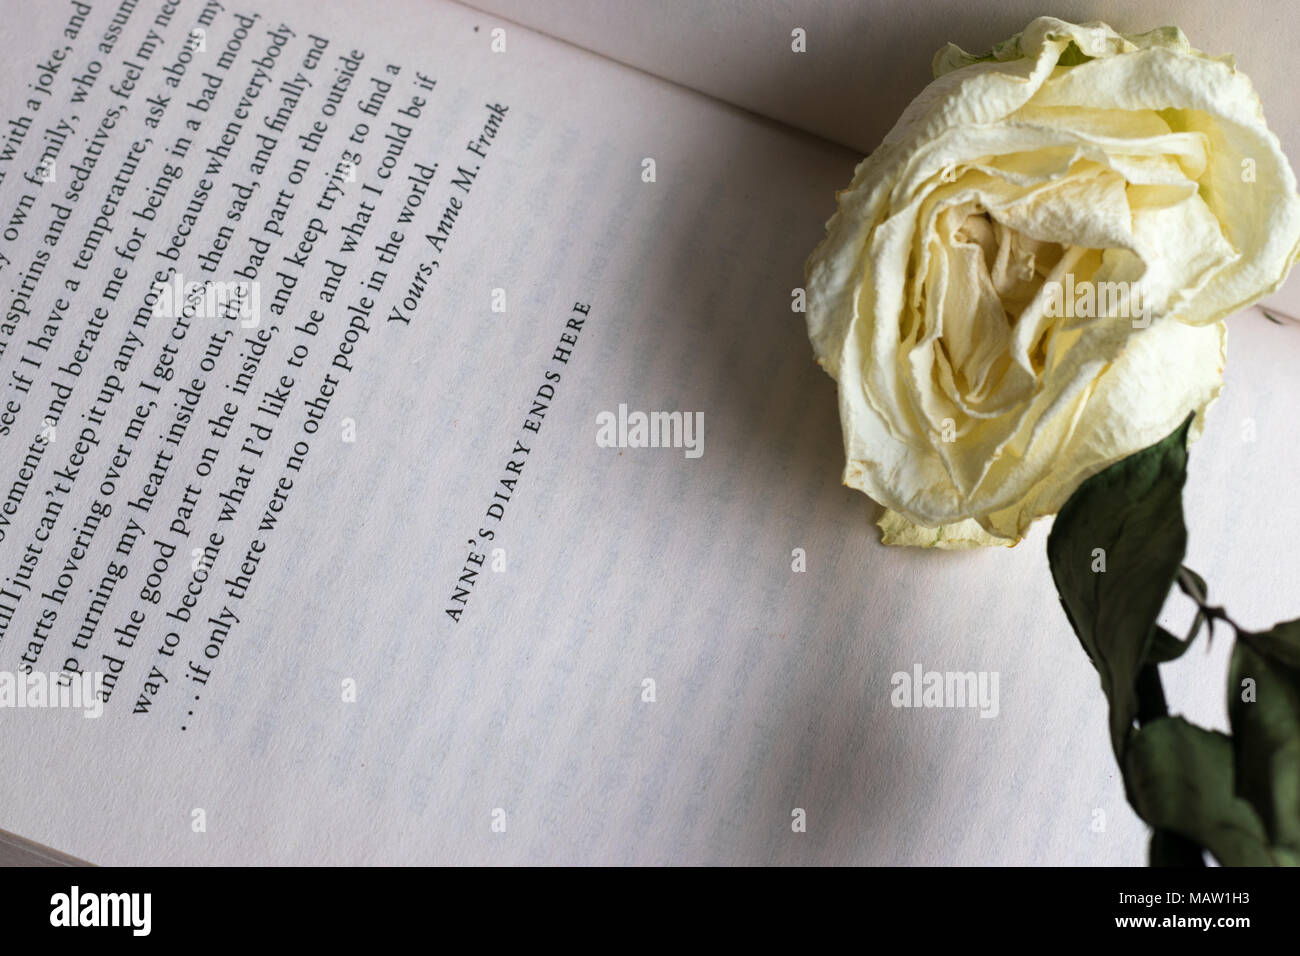 Letzte Seite von "Das Tagebuch eines jungen Mädchens" von Anne Frank, die Worte: "Anne Tagebuch endet hier" mit einem verdorrten Weiß auf dem Buch platziert Rose Stockfoto